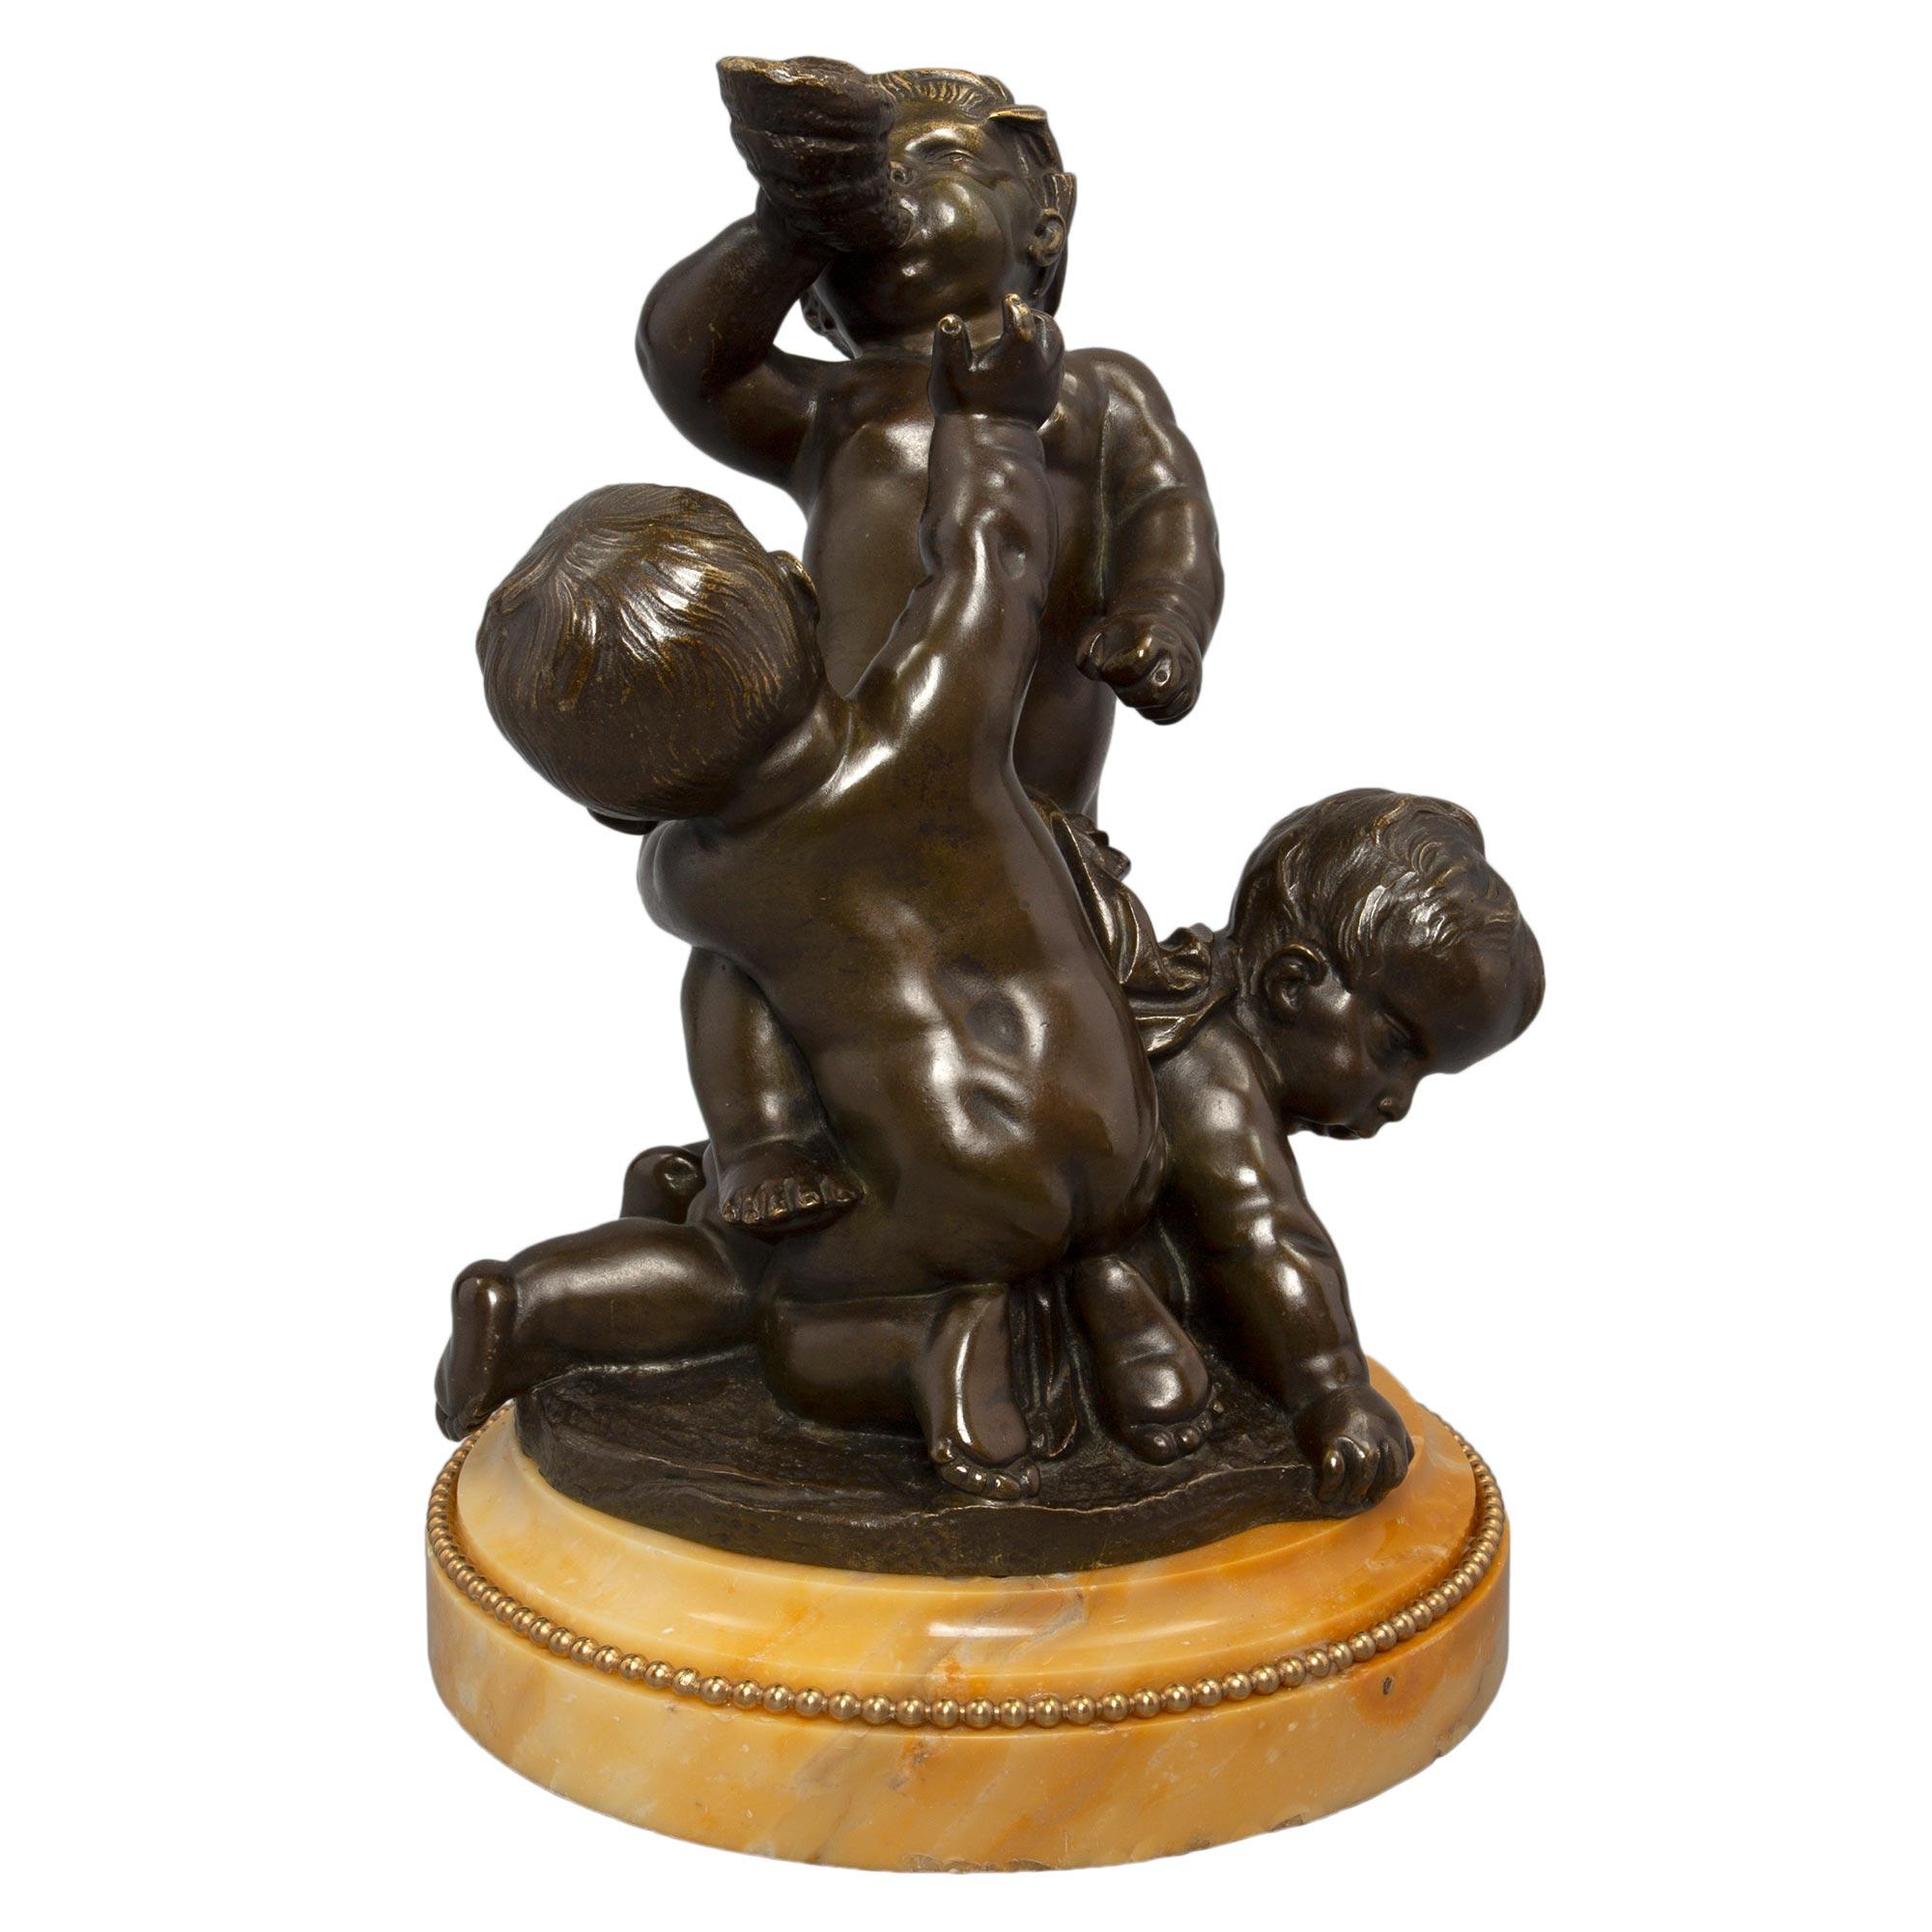 Charmante statue en bronze patiné, bronze doré et marbre de Sienne de grande qualité, de style Louis XVI, datant du XIXe siècle. Le petit groupe de trois charmants chérubins repose sur une base circulaire en marbre de Sienne, avec une bordure